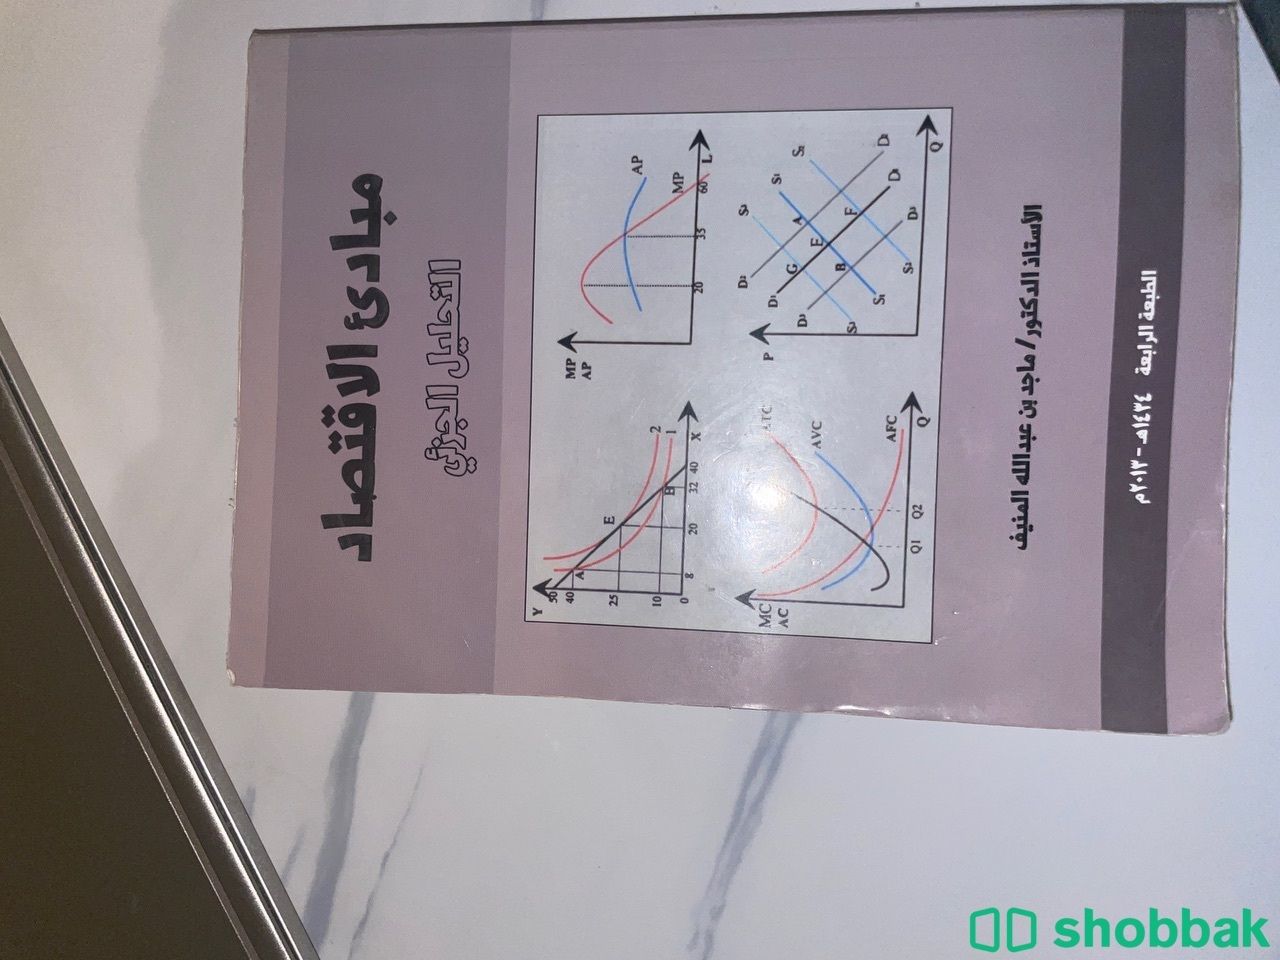 كتاب مبادىء الاقتصاد التحليل الجزئي Shobbak Saudi Arabia